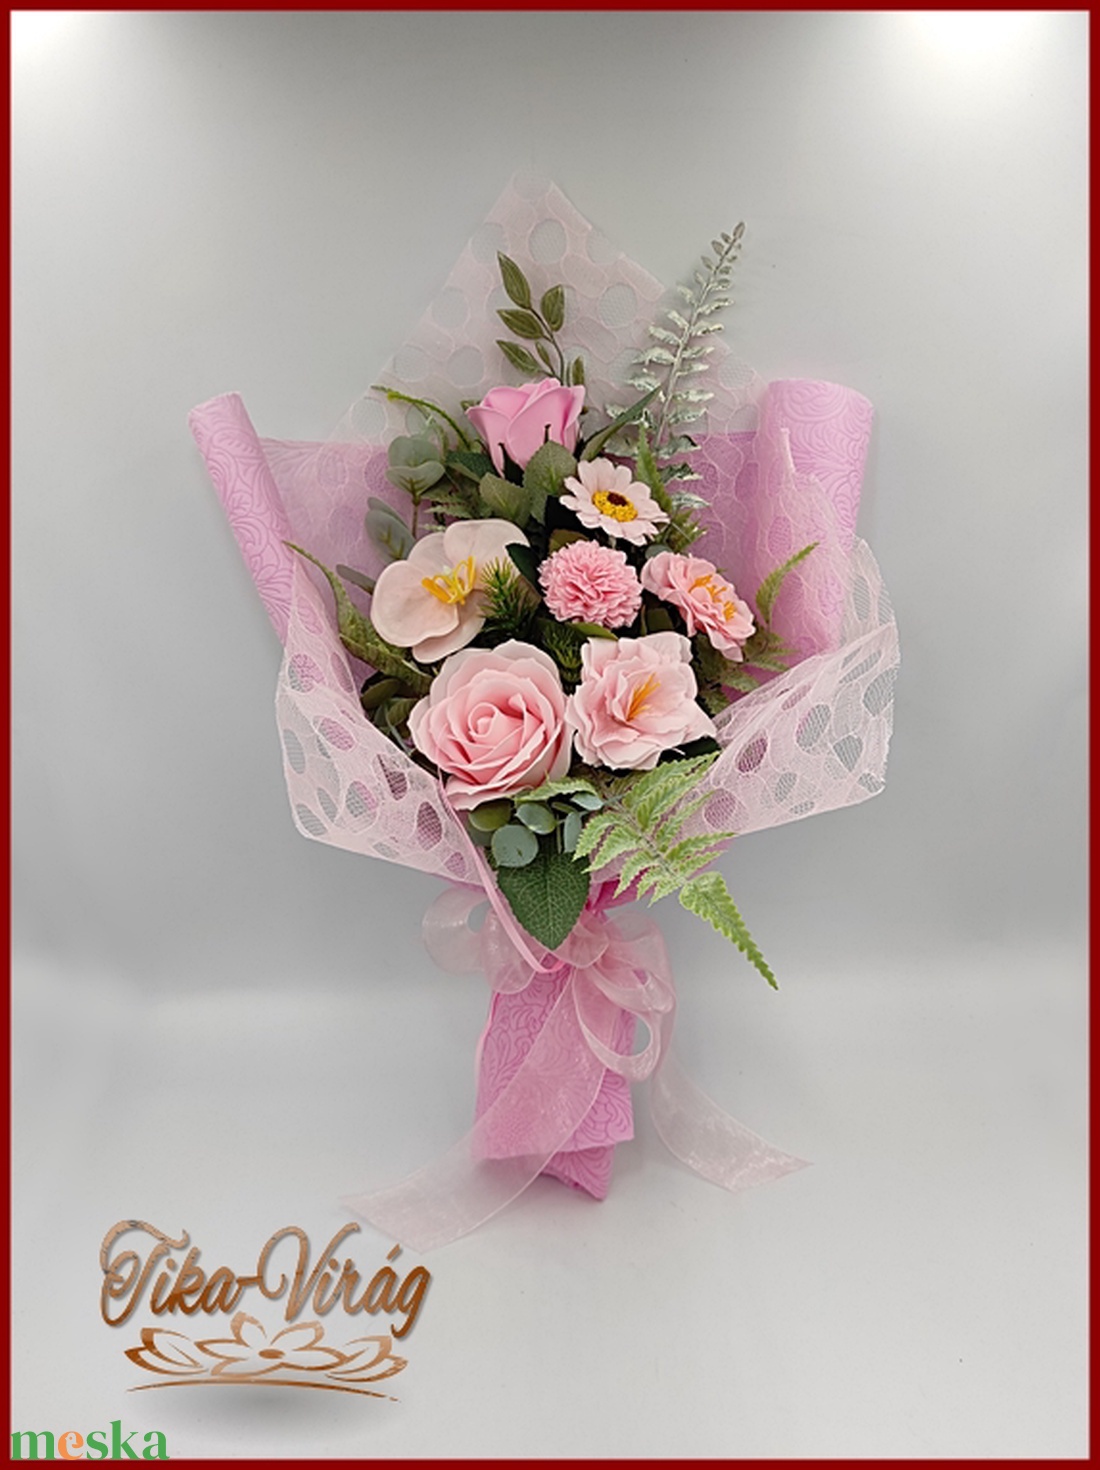 Rózsaszín szappan-virág csokor - otthon & lakás - dekoráció - virágdísz és tartó - csokor & virágdísz - Meska.hu